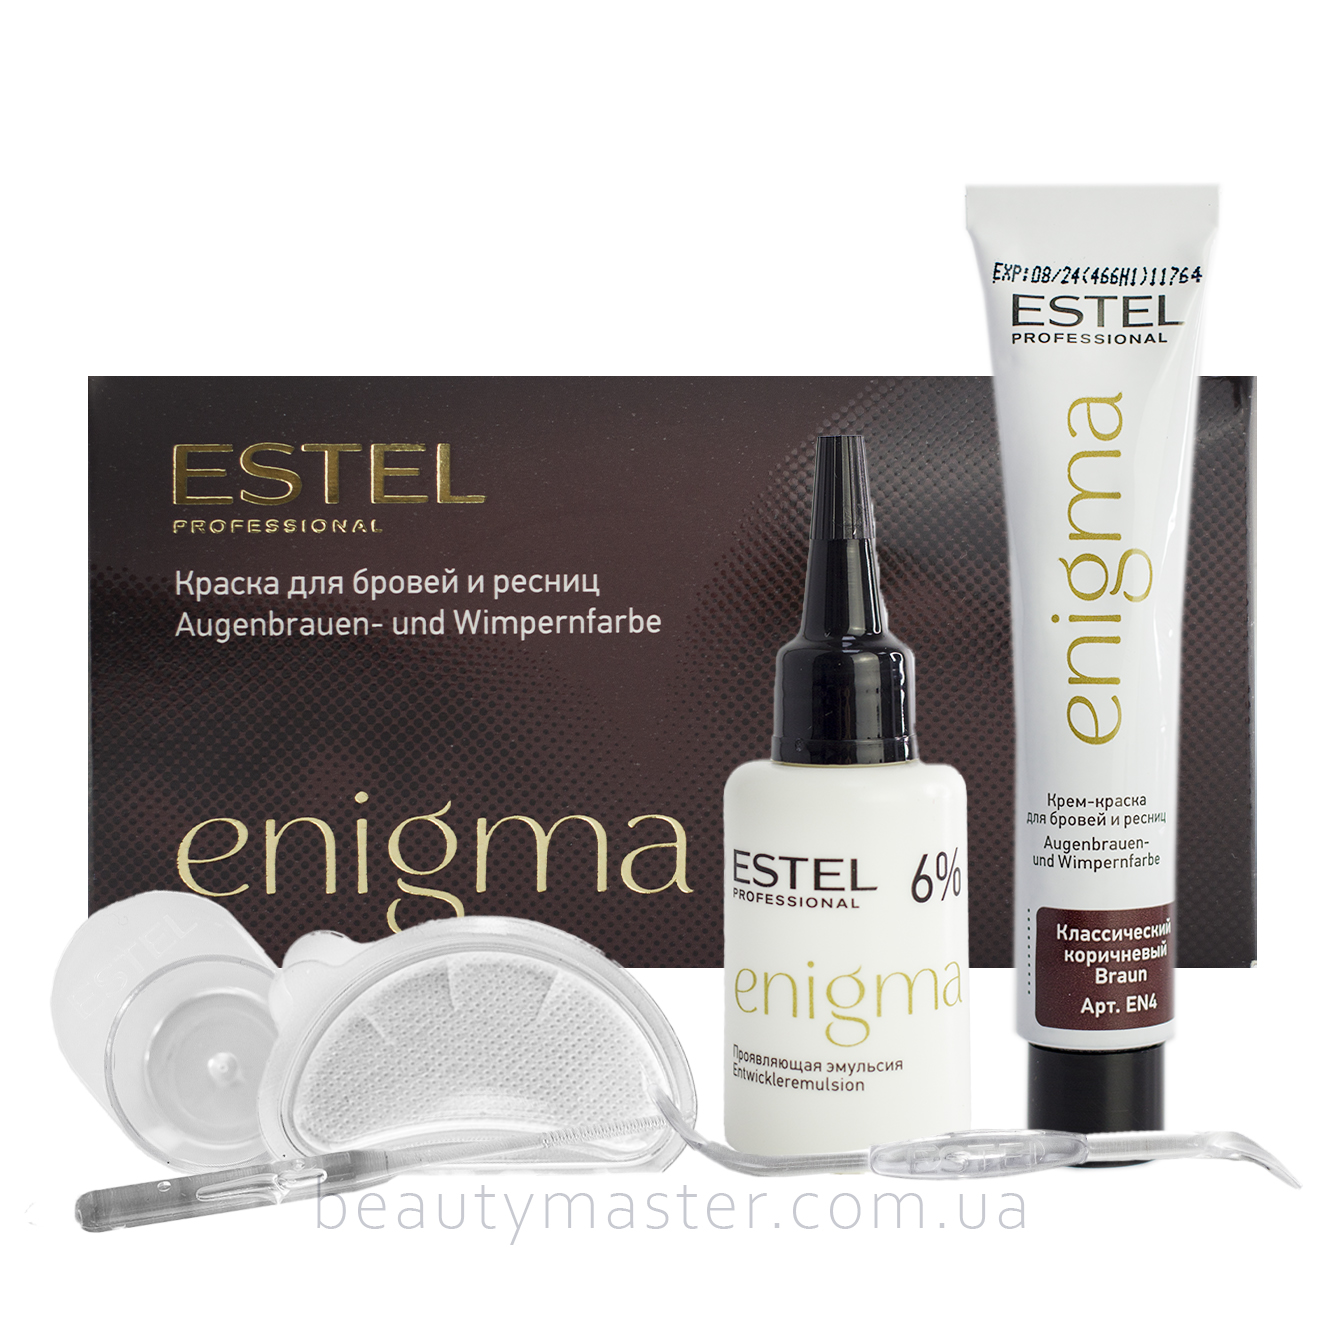 Estel Краска для бровей и ресниц ENIGMA коричневая